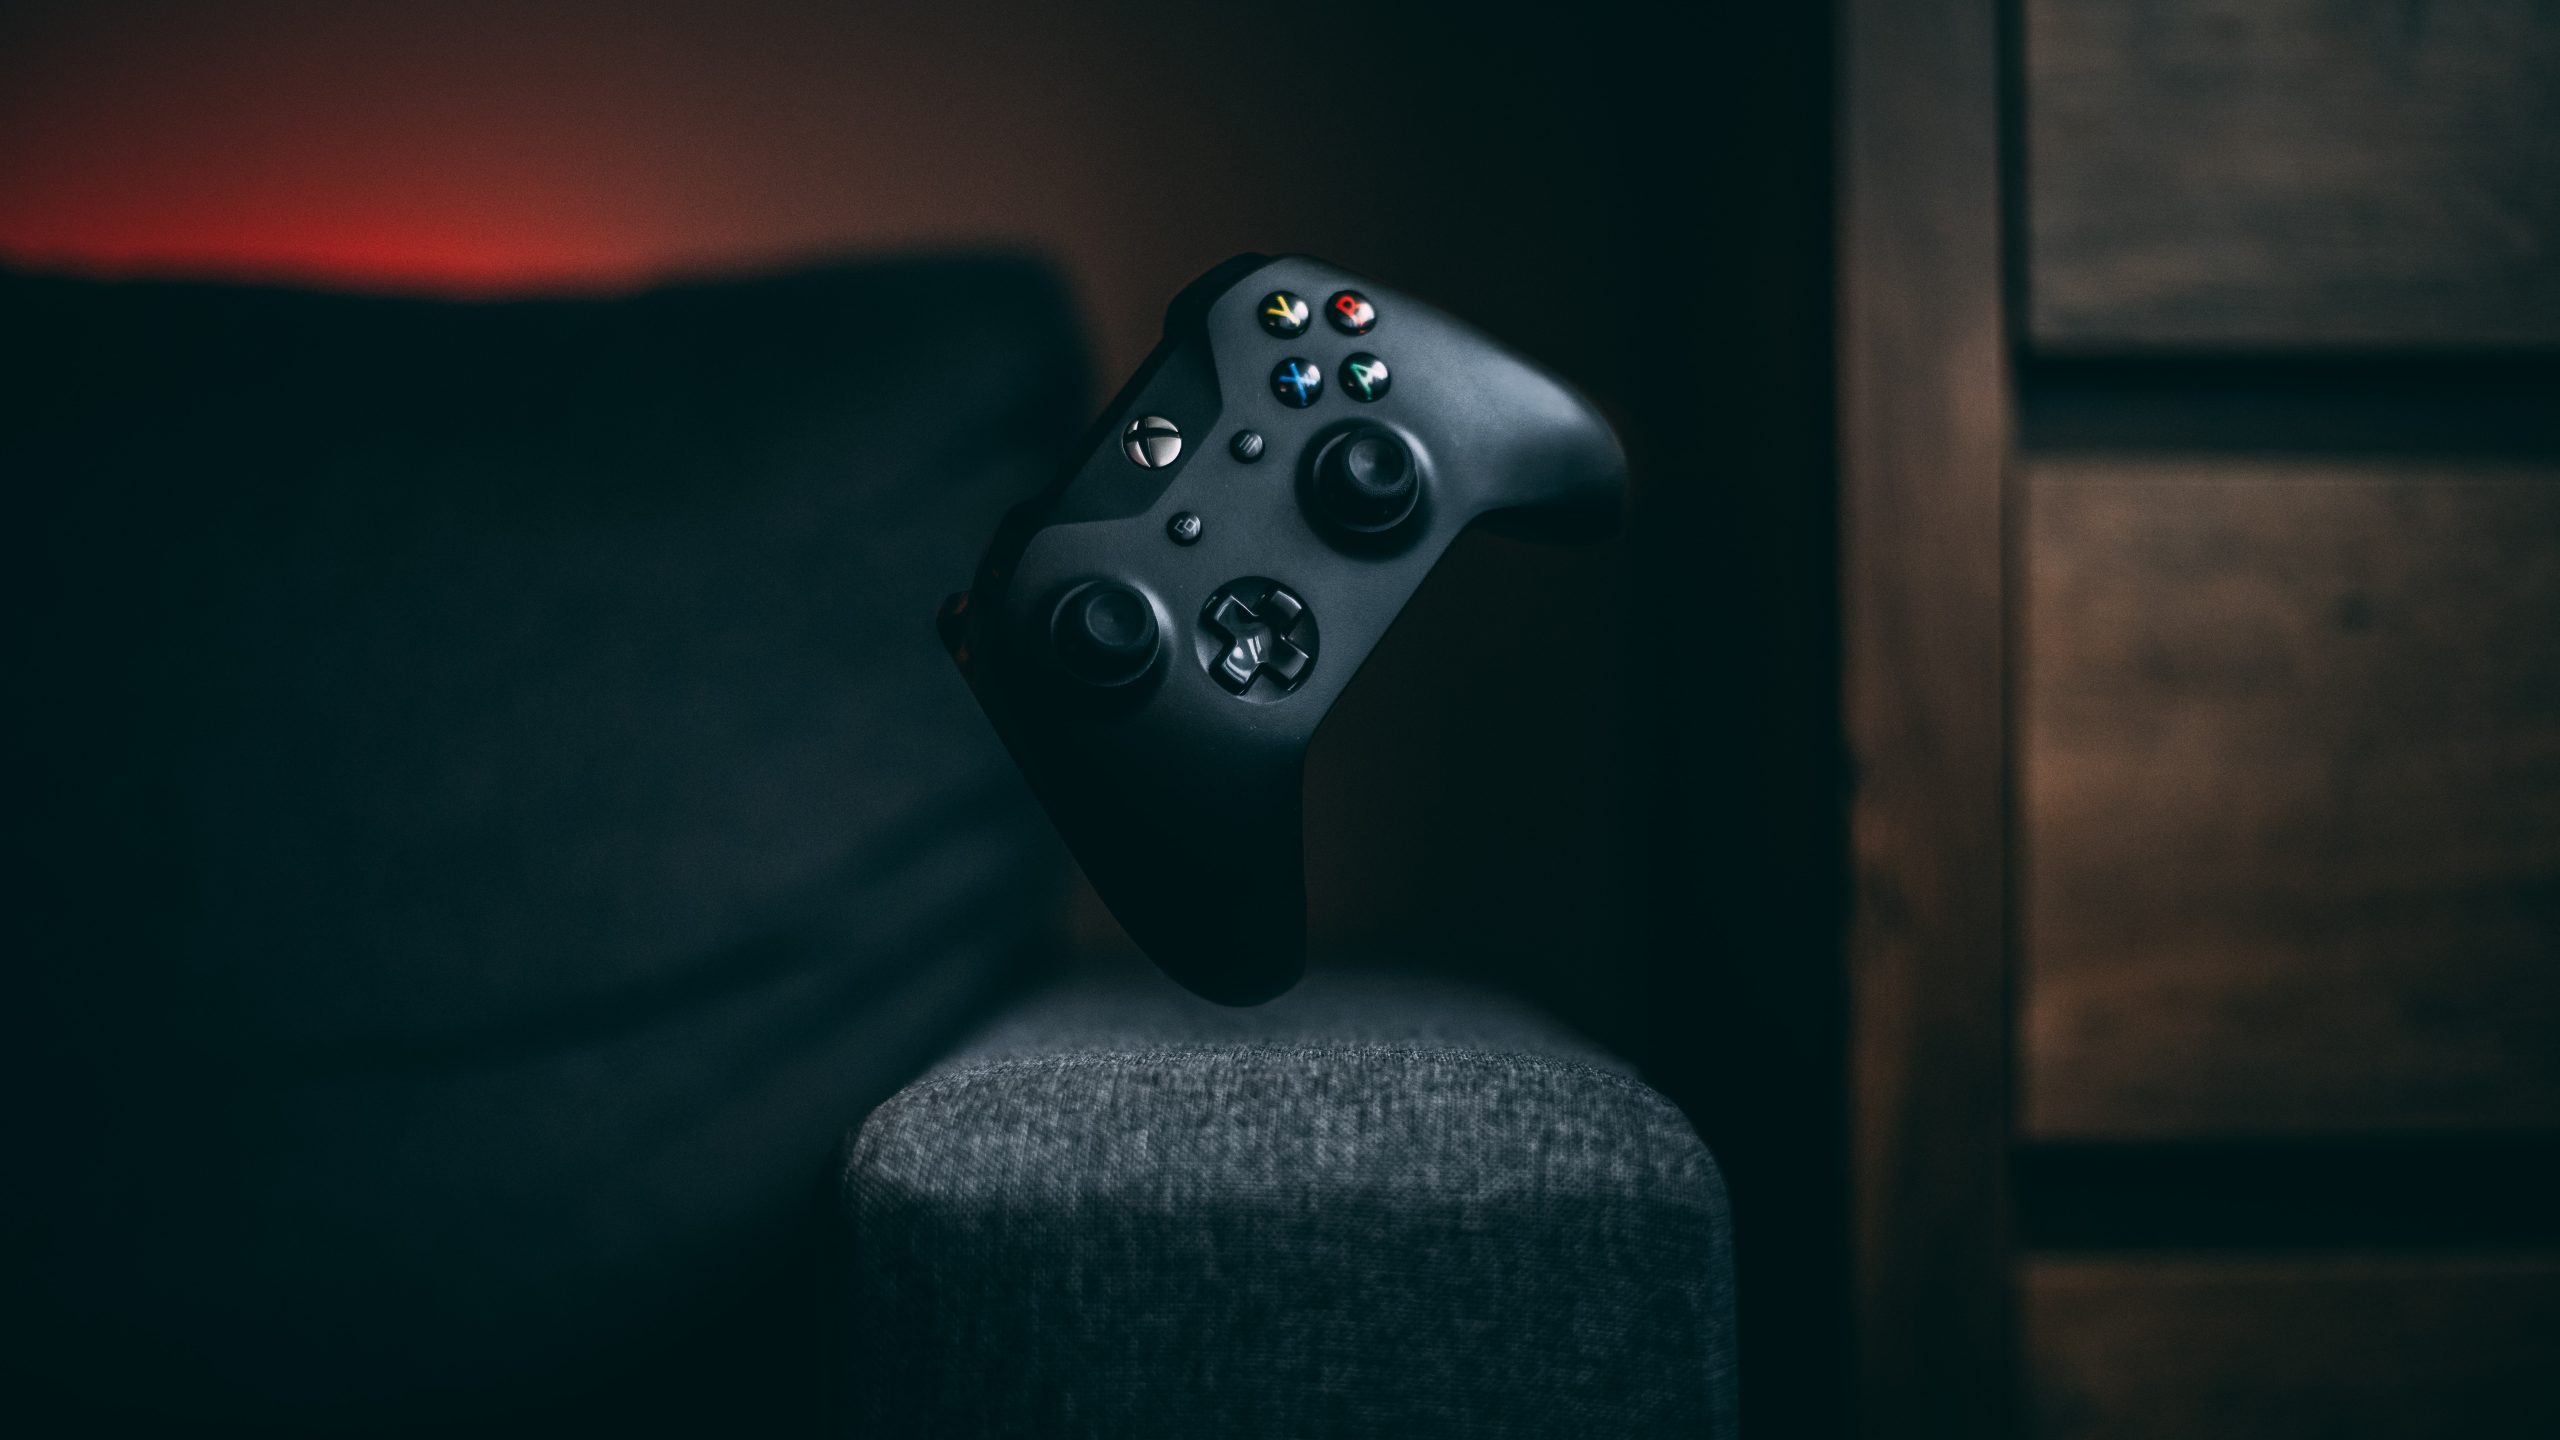 Imagem mostra o controle dos videogames Xbox